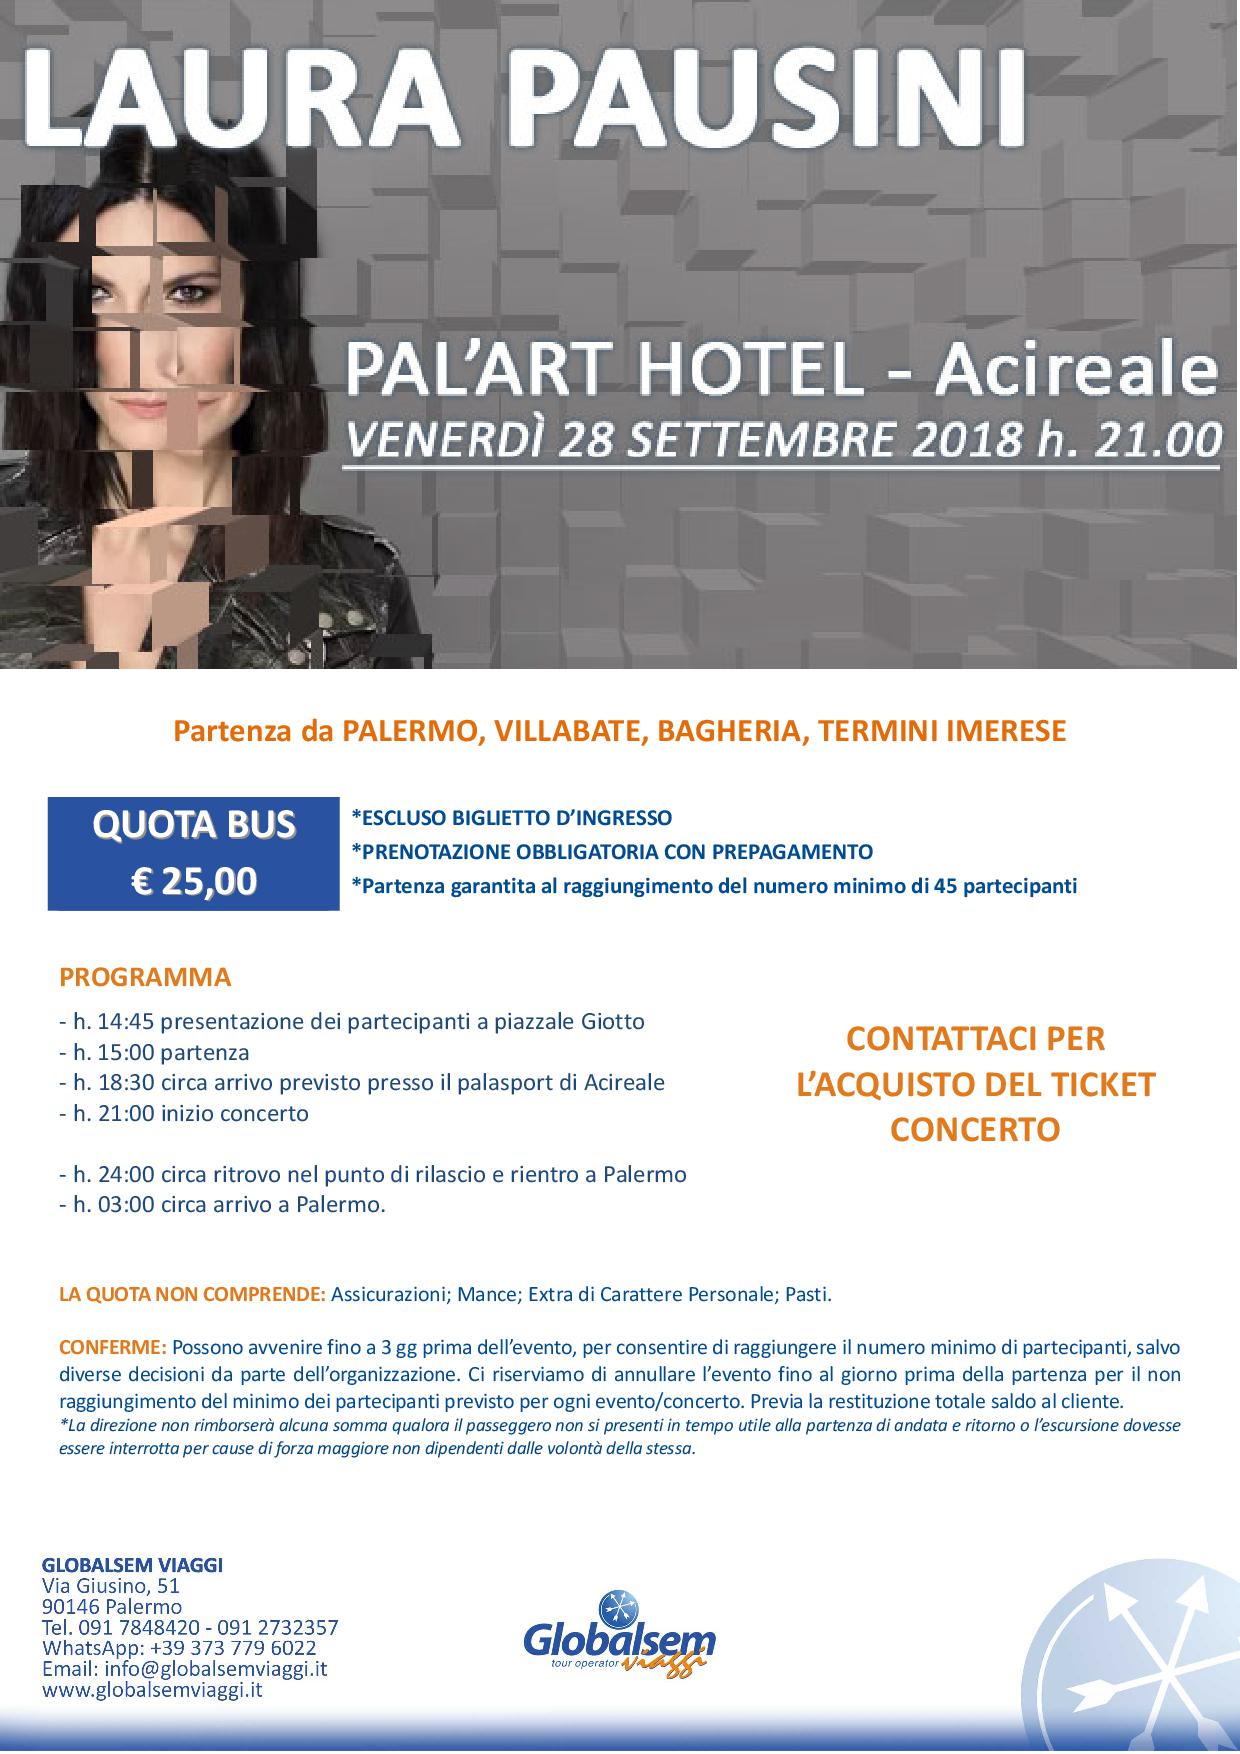 LAURA PAUSINI in concerto 28 settembre 2018 palasport Acireale - BUS da Palermo